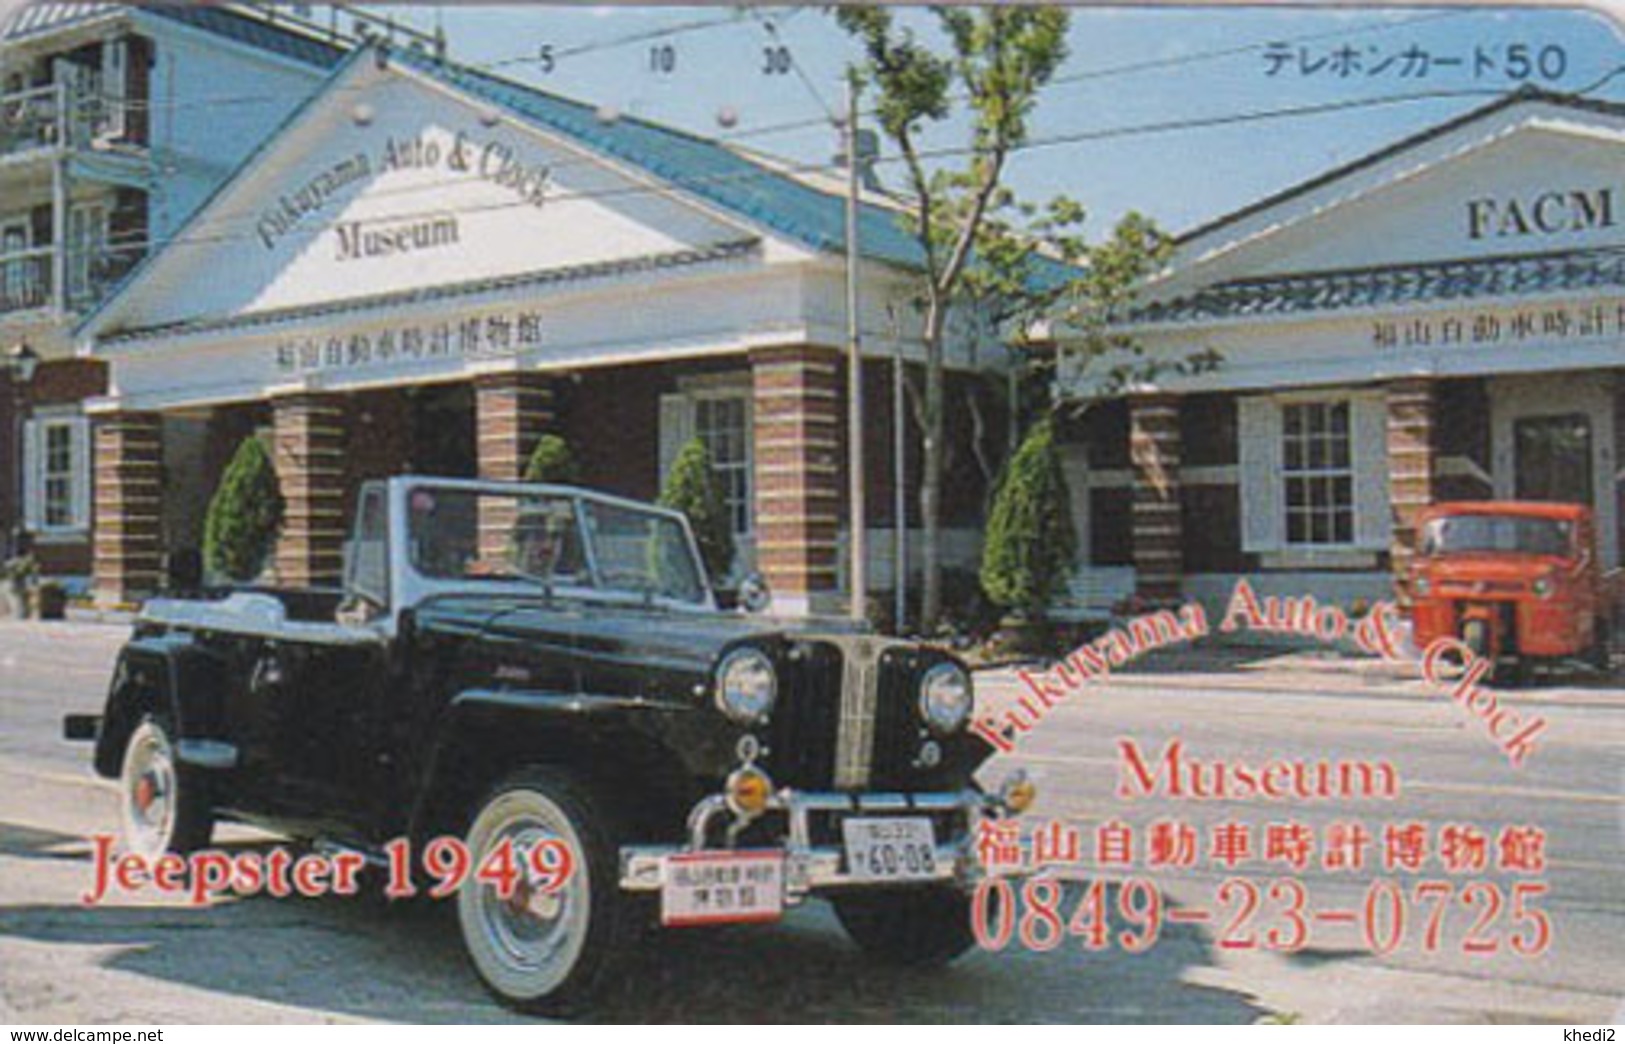 Télécarte Japon / 350-0745 - MUSEE - VOITURE JEEPSTER 1949 - AUTO & CLOCK MUSEUM - OLDTIMER CAR Japan Phonecard -  75 - Autos